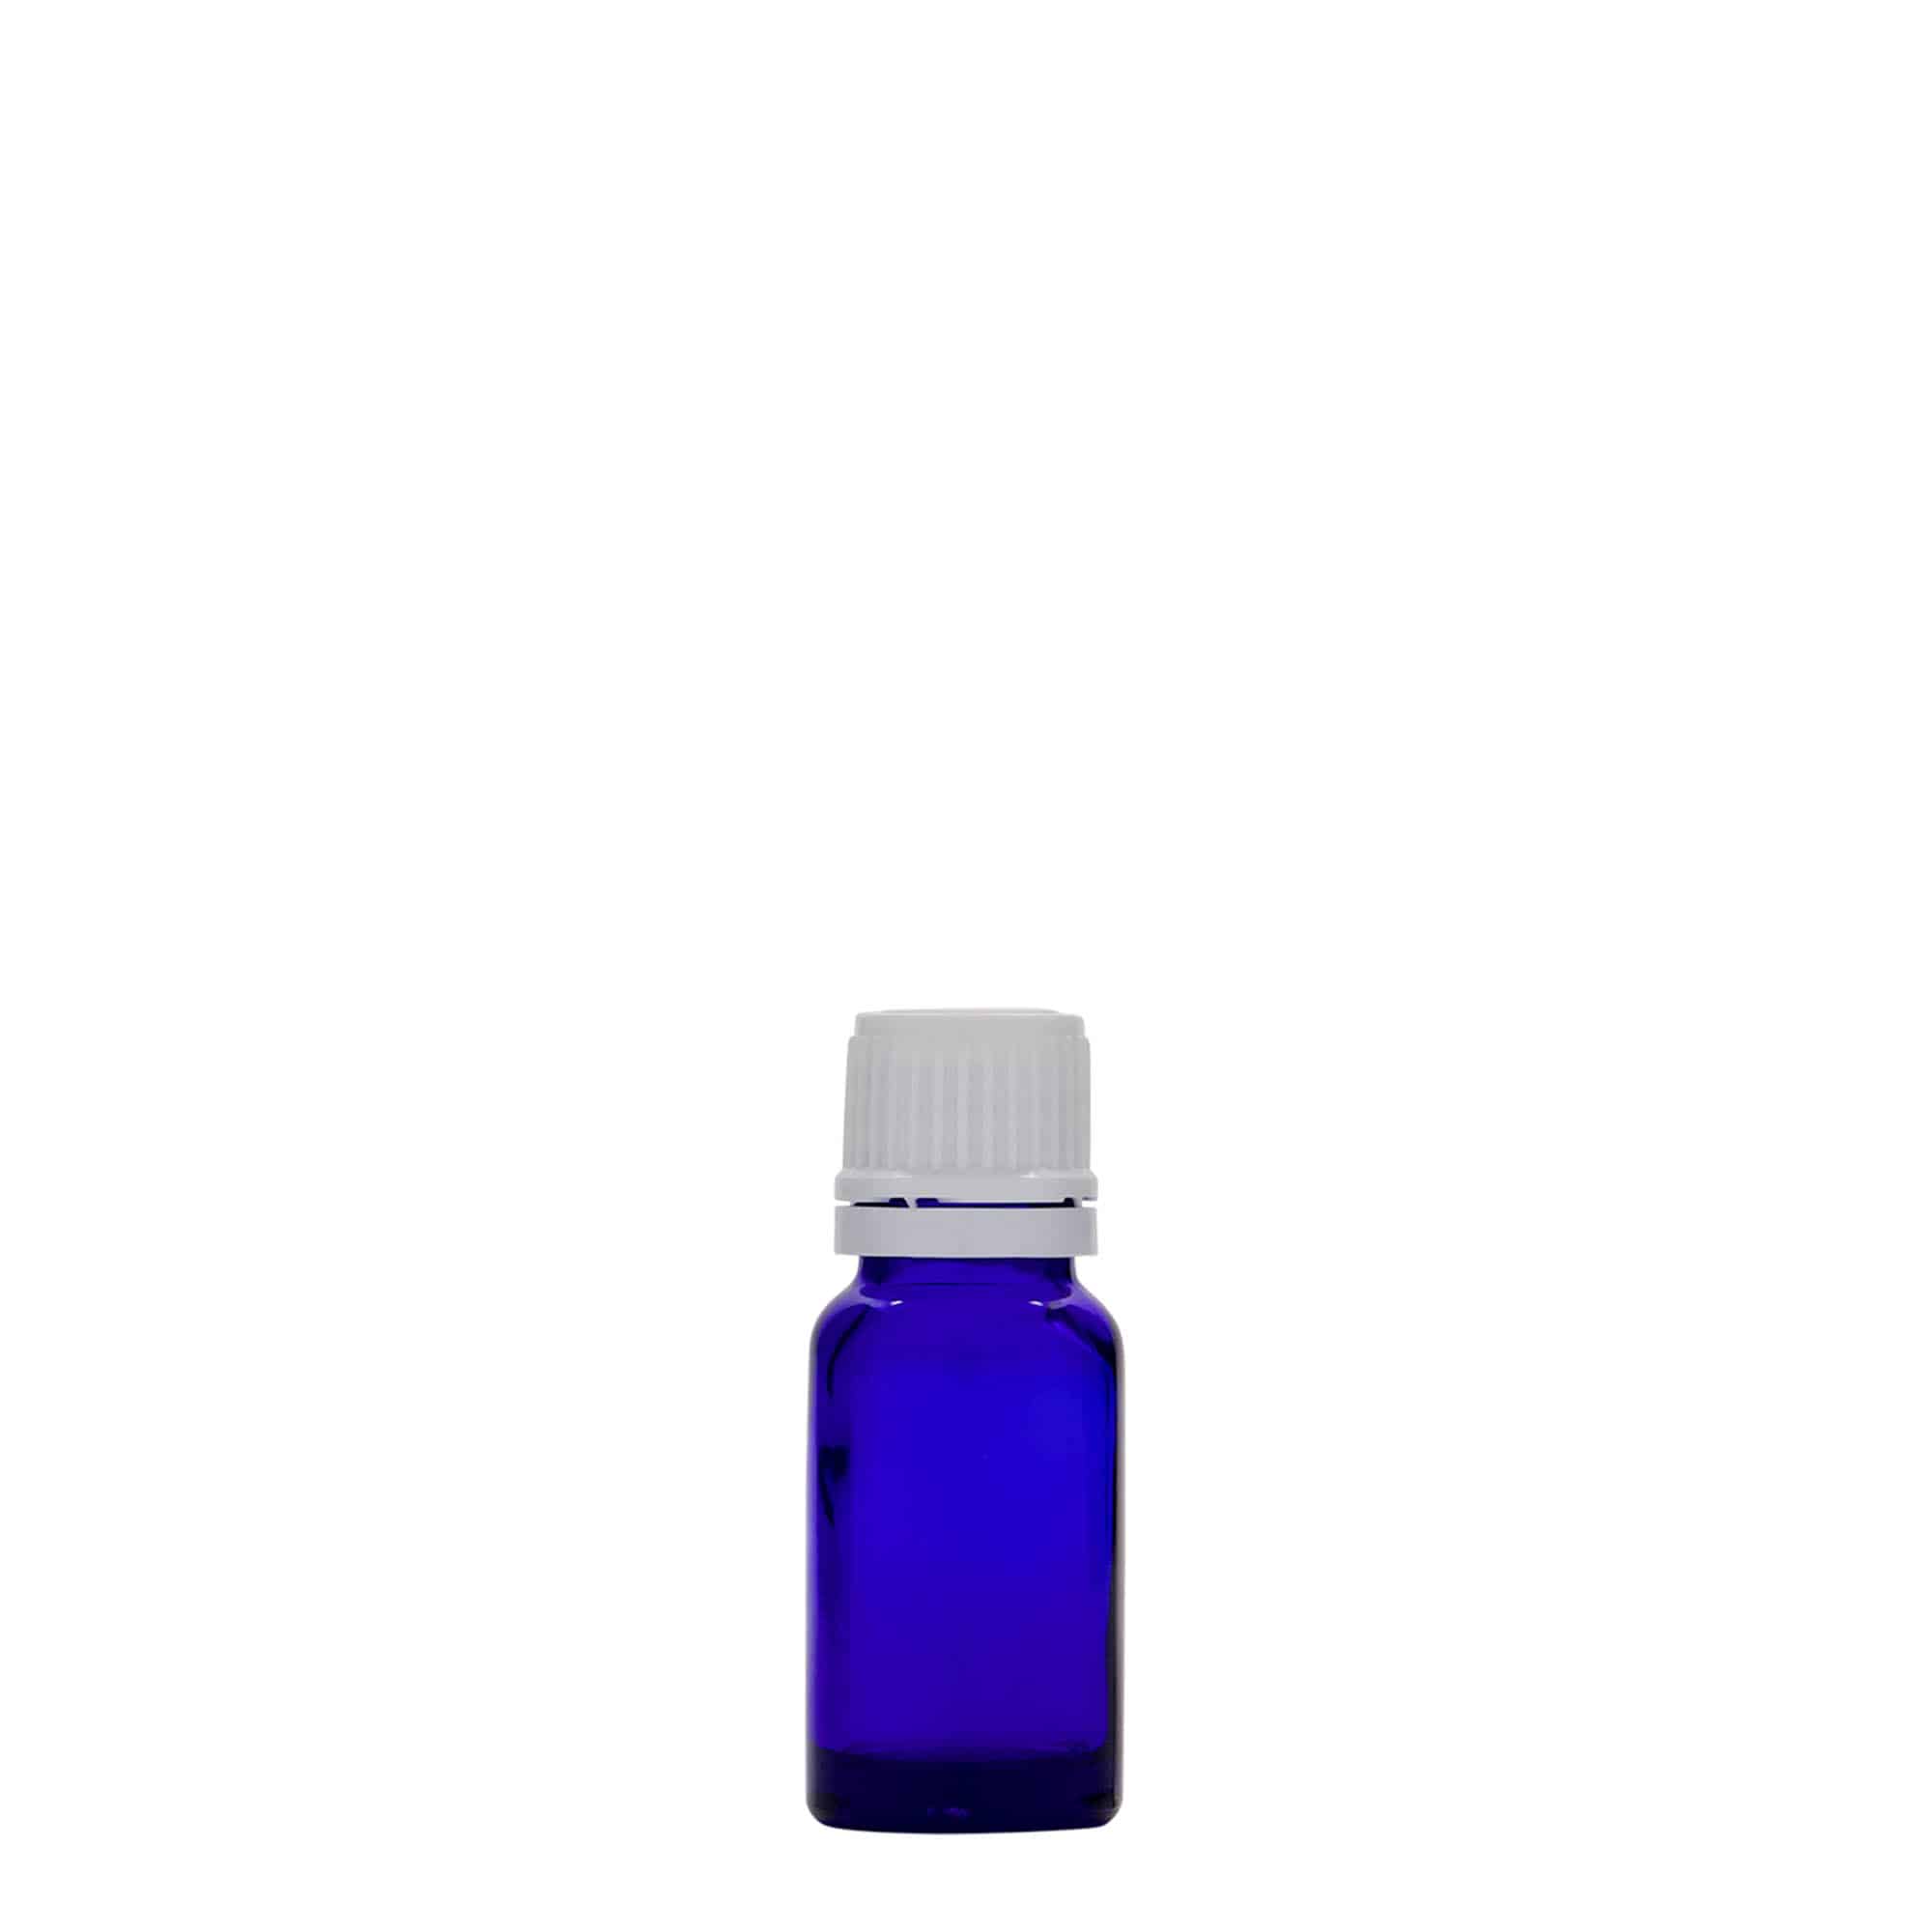 Lékovka 10 ml, sklo, královská modř, ústí: DIN 18